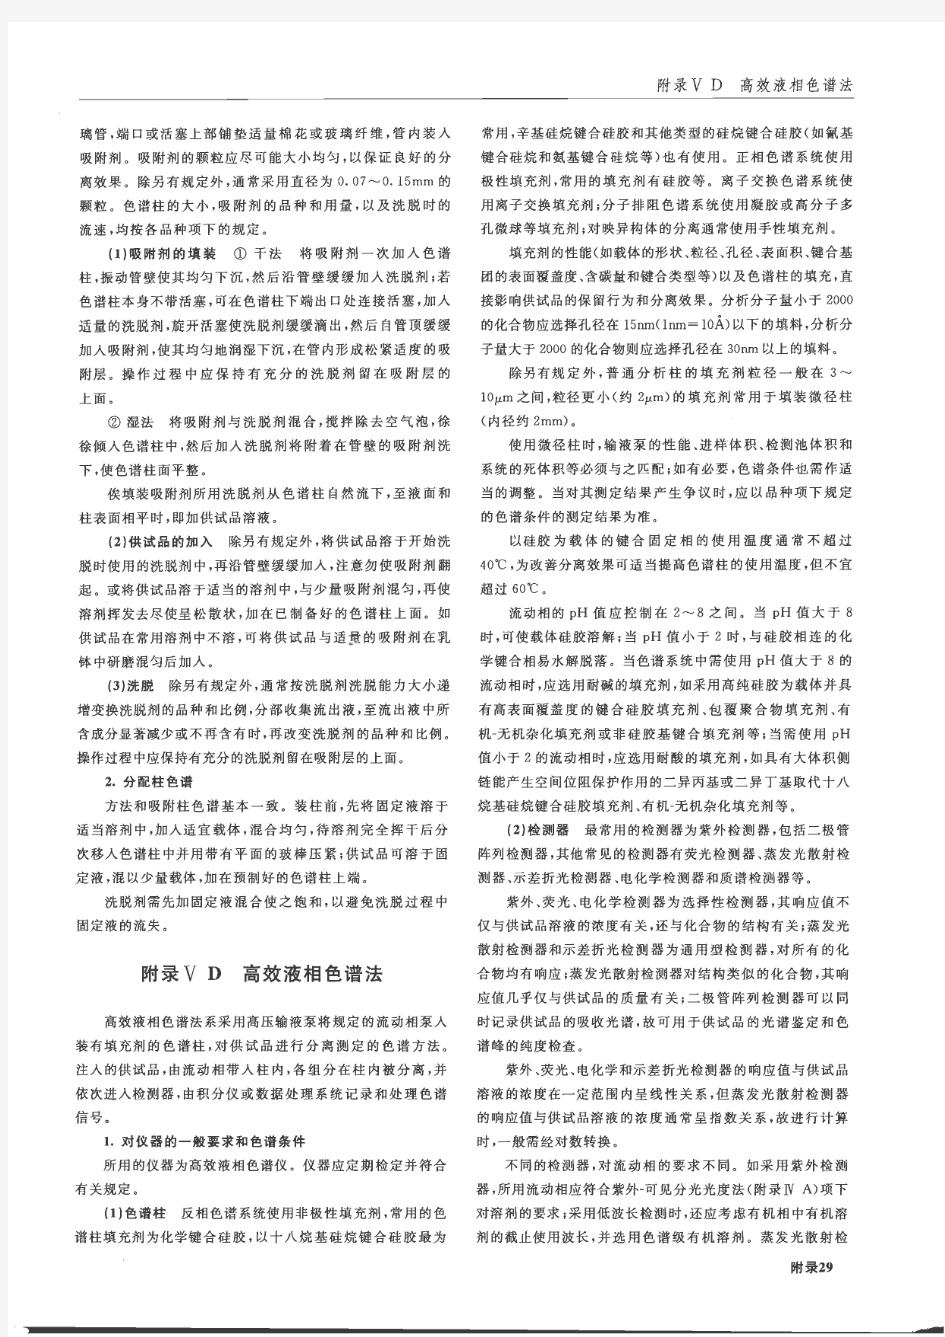 《中国药典》2010年版2部高效液相色谱法